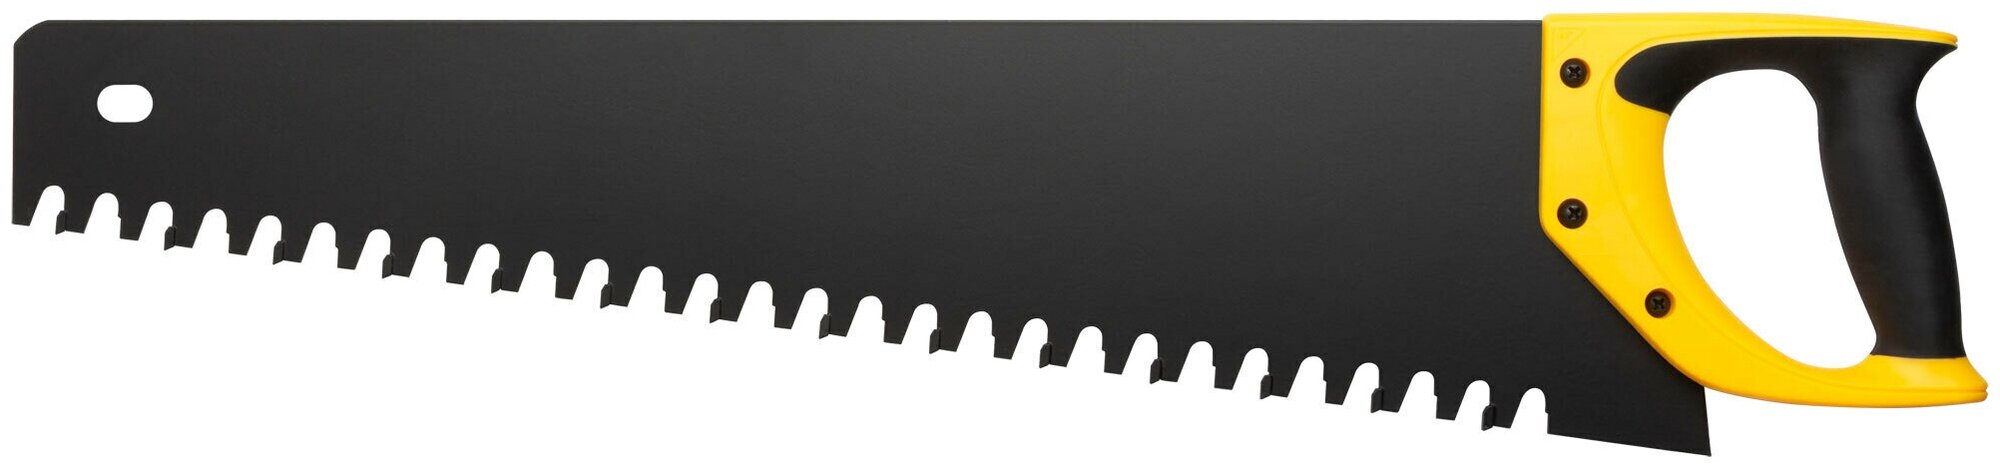 Ножовка по пенобетону, карбидные вставки на каждом 2-ом зубе, прорезиненная ручка 550 мм - фотография № 1